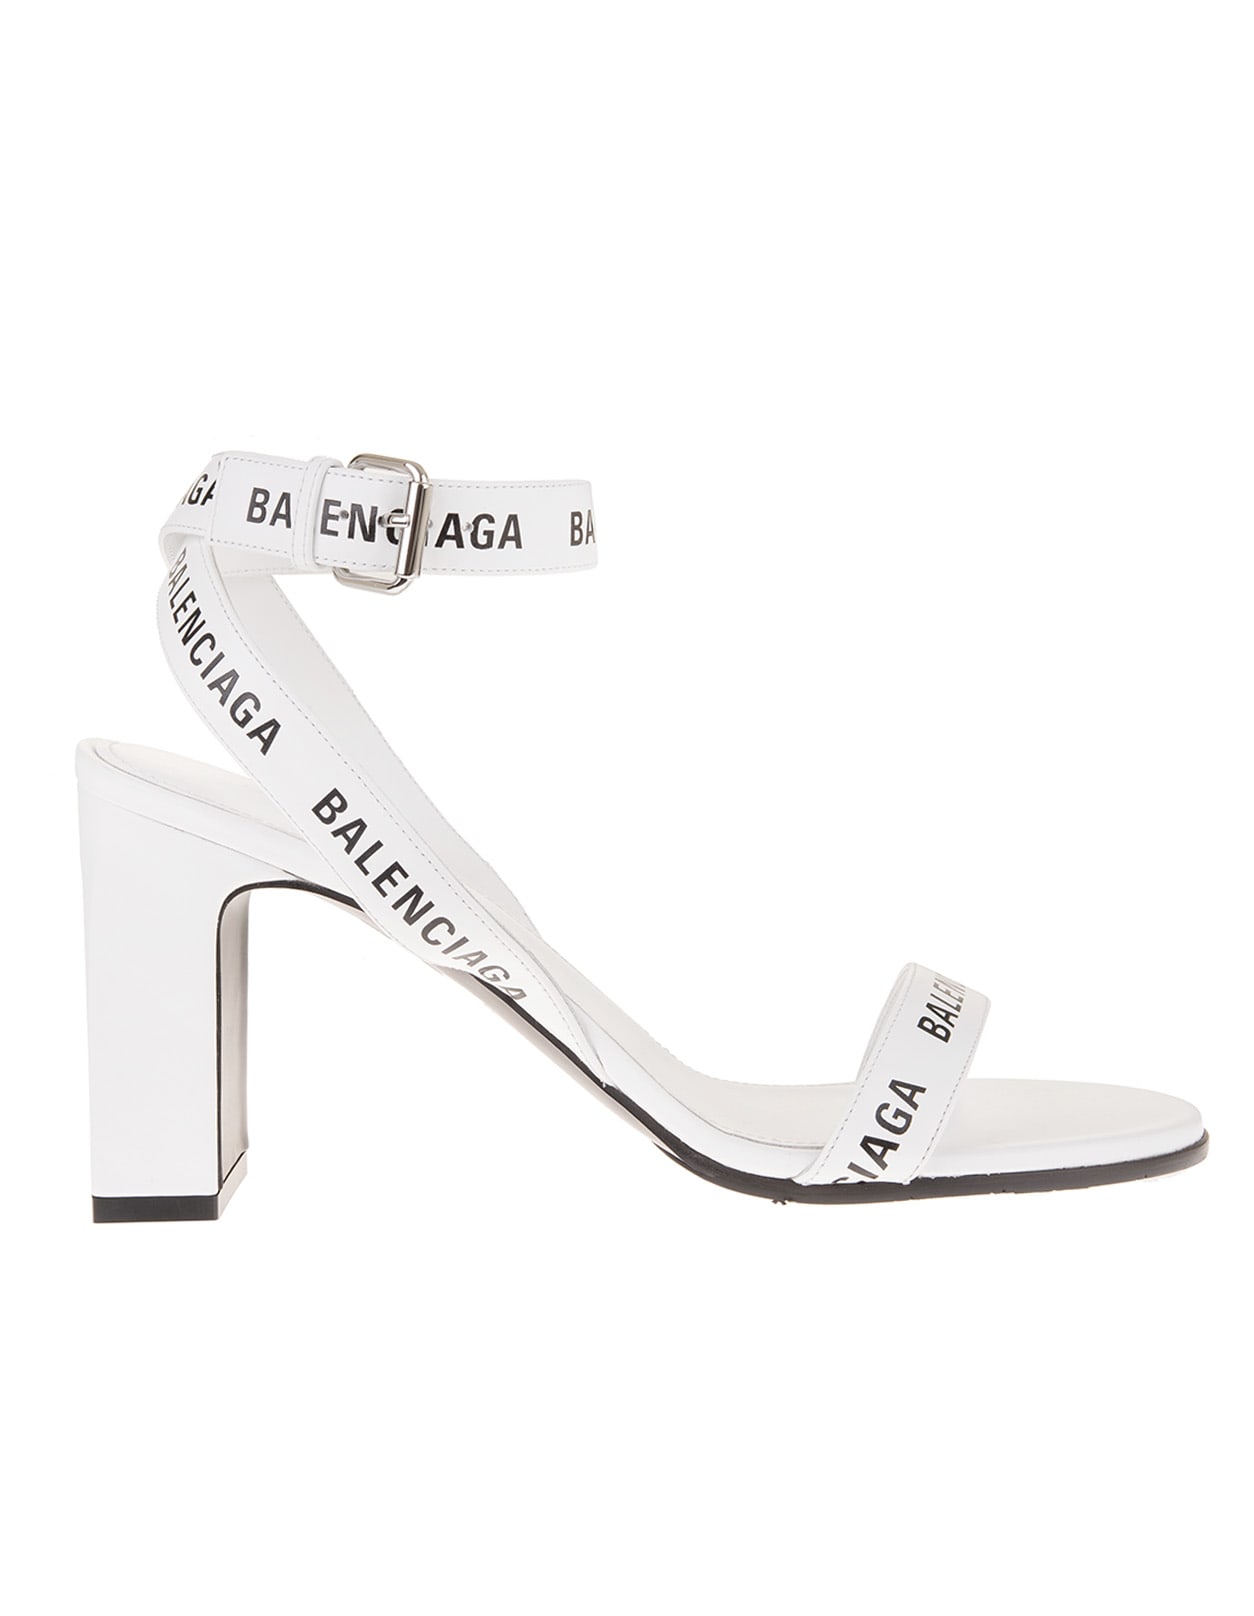 Balenciaga White Sandal With Logoed Straps